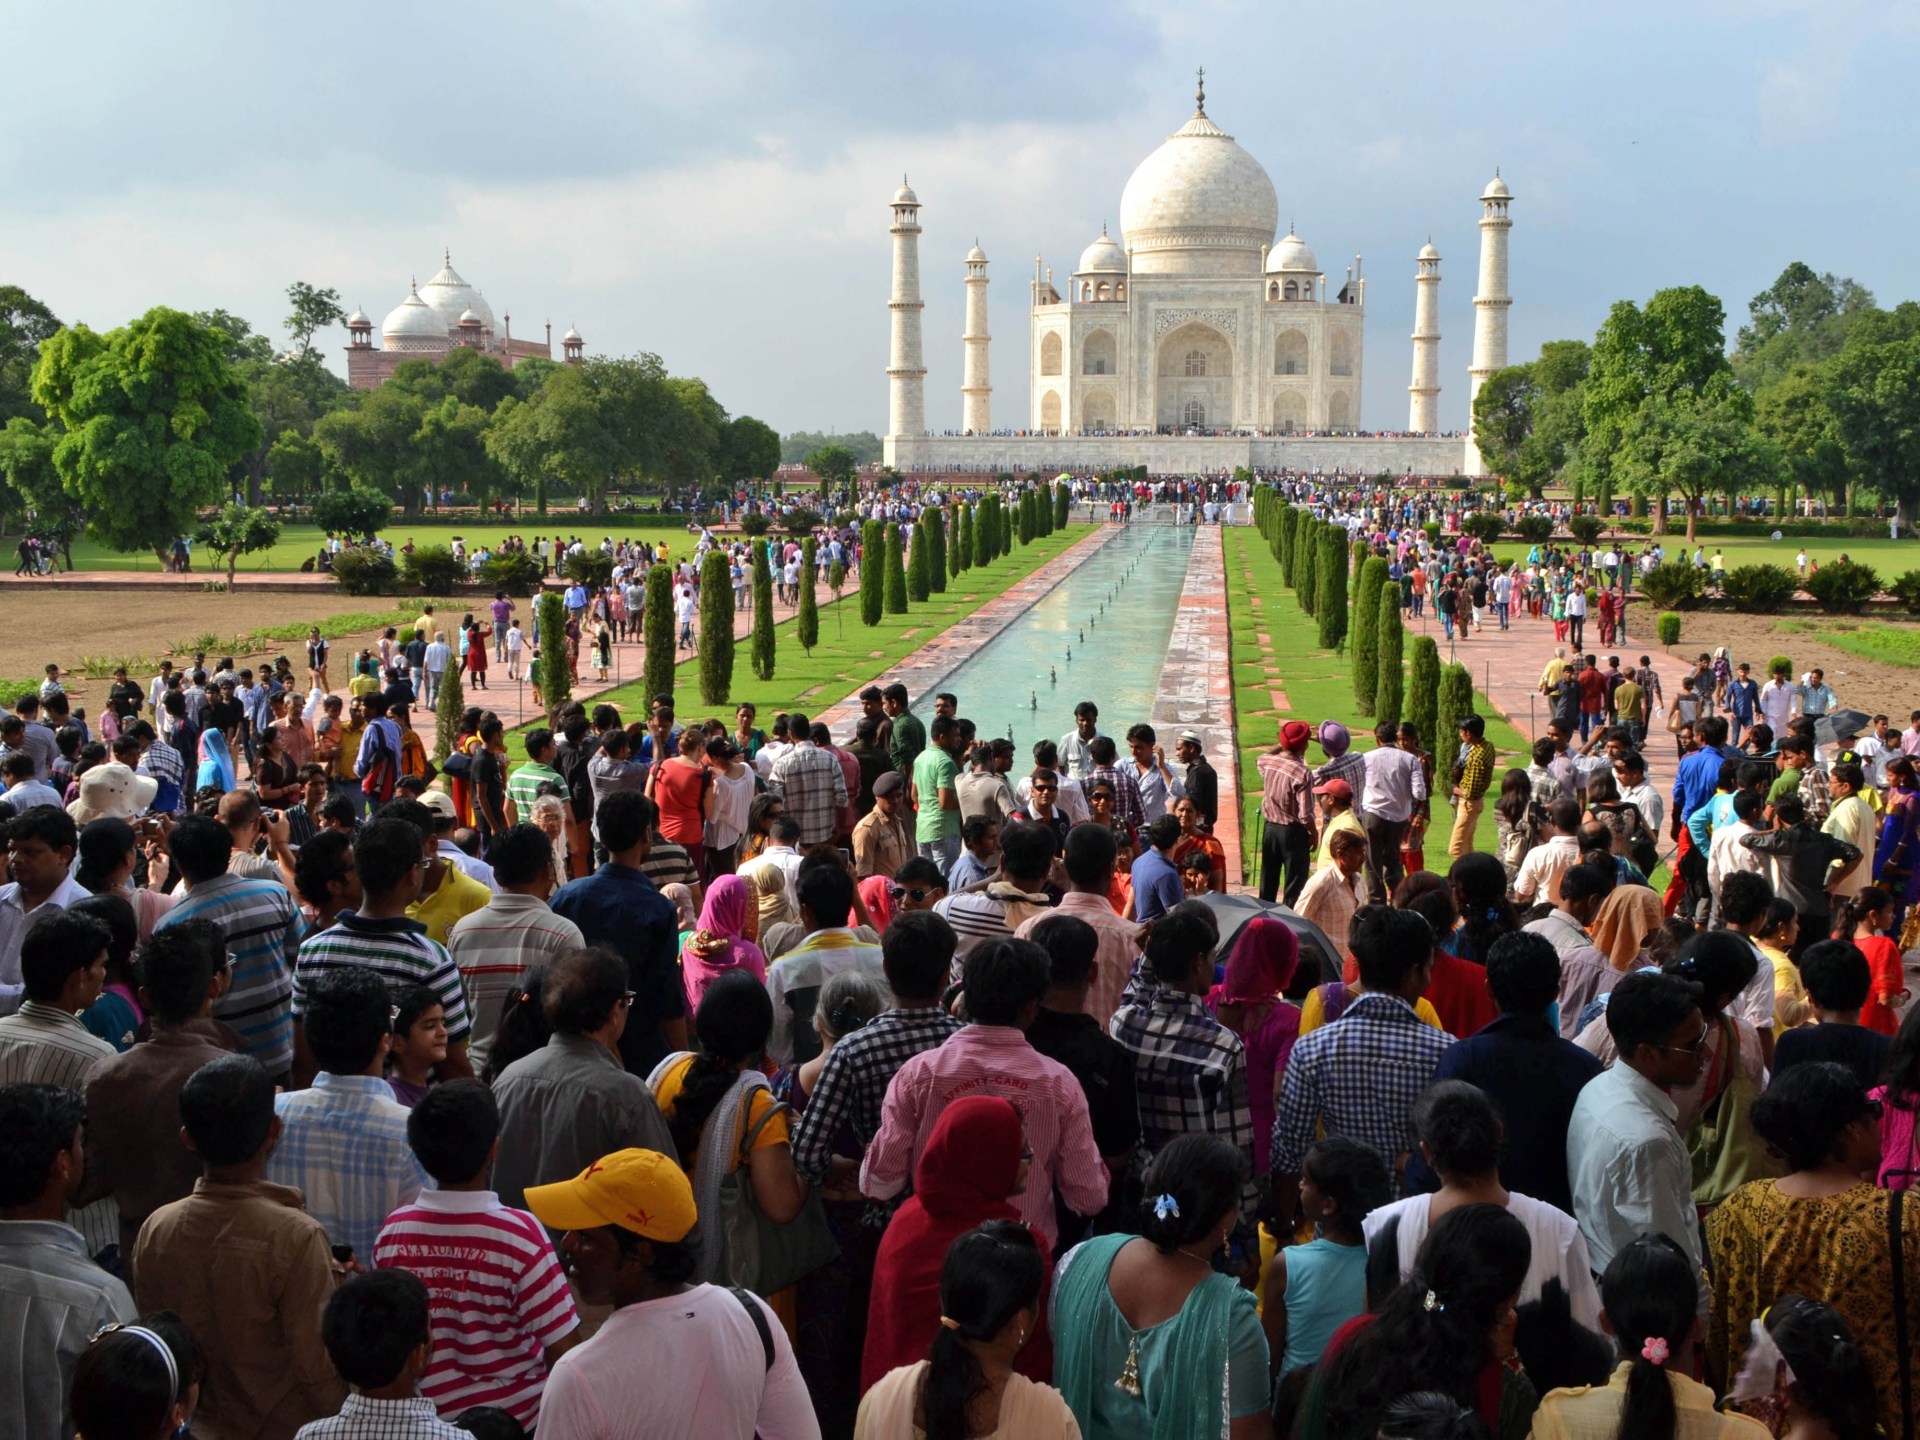 Mengedit Muslim dari sejarah India berarti mengingkari masa depan mereka |  Sejarah